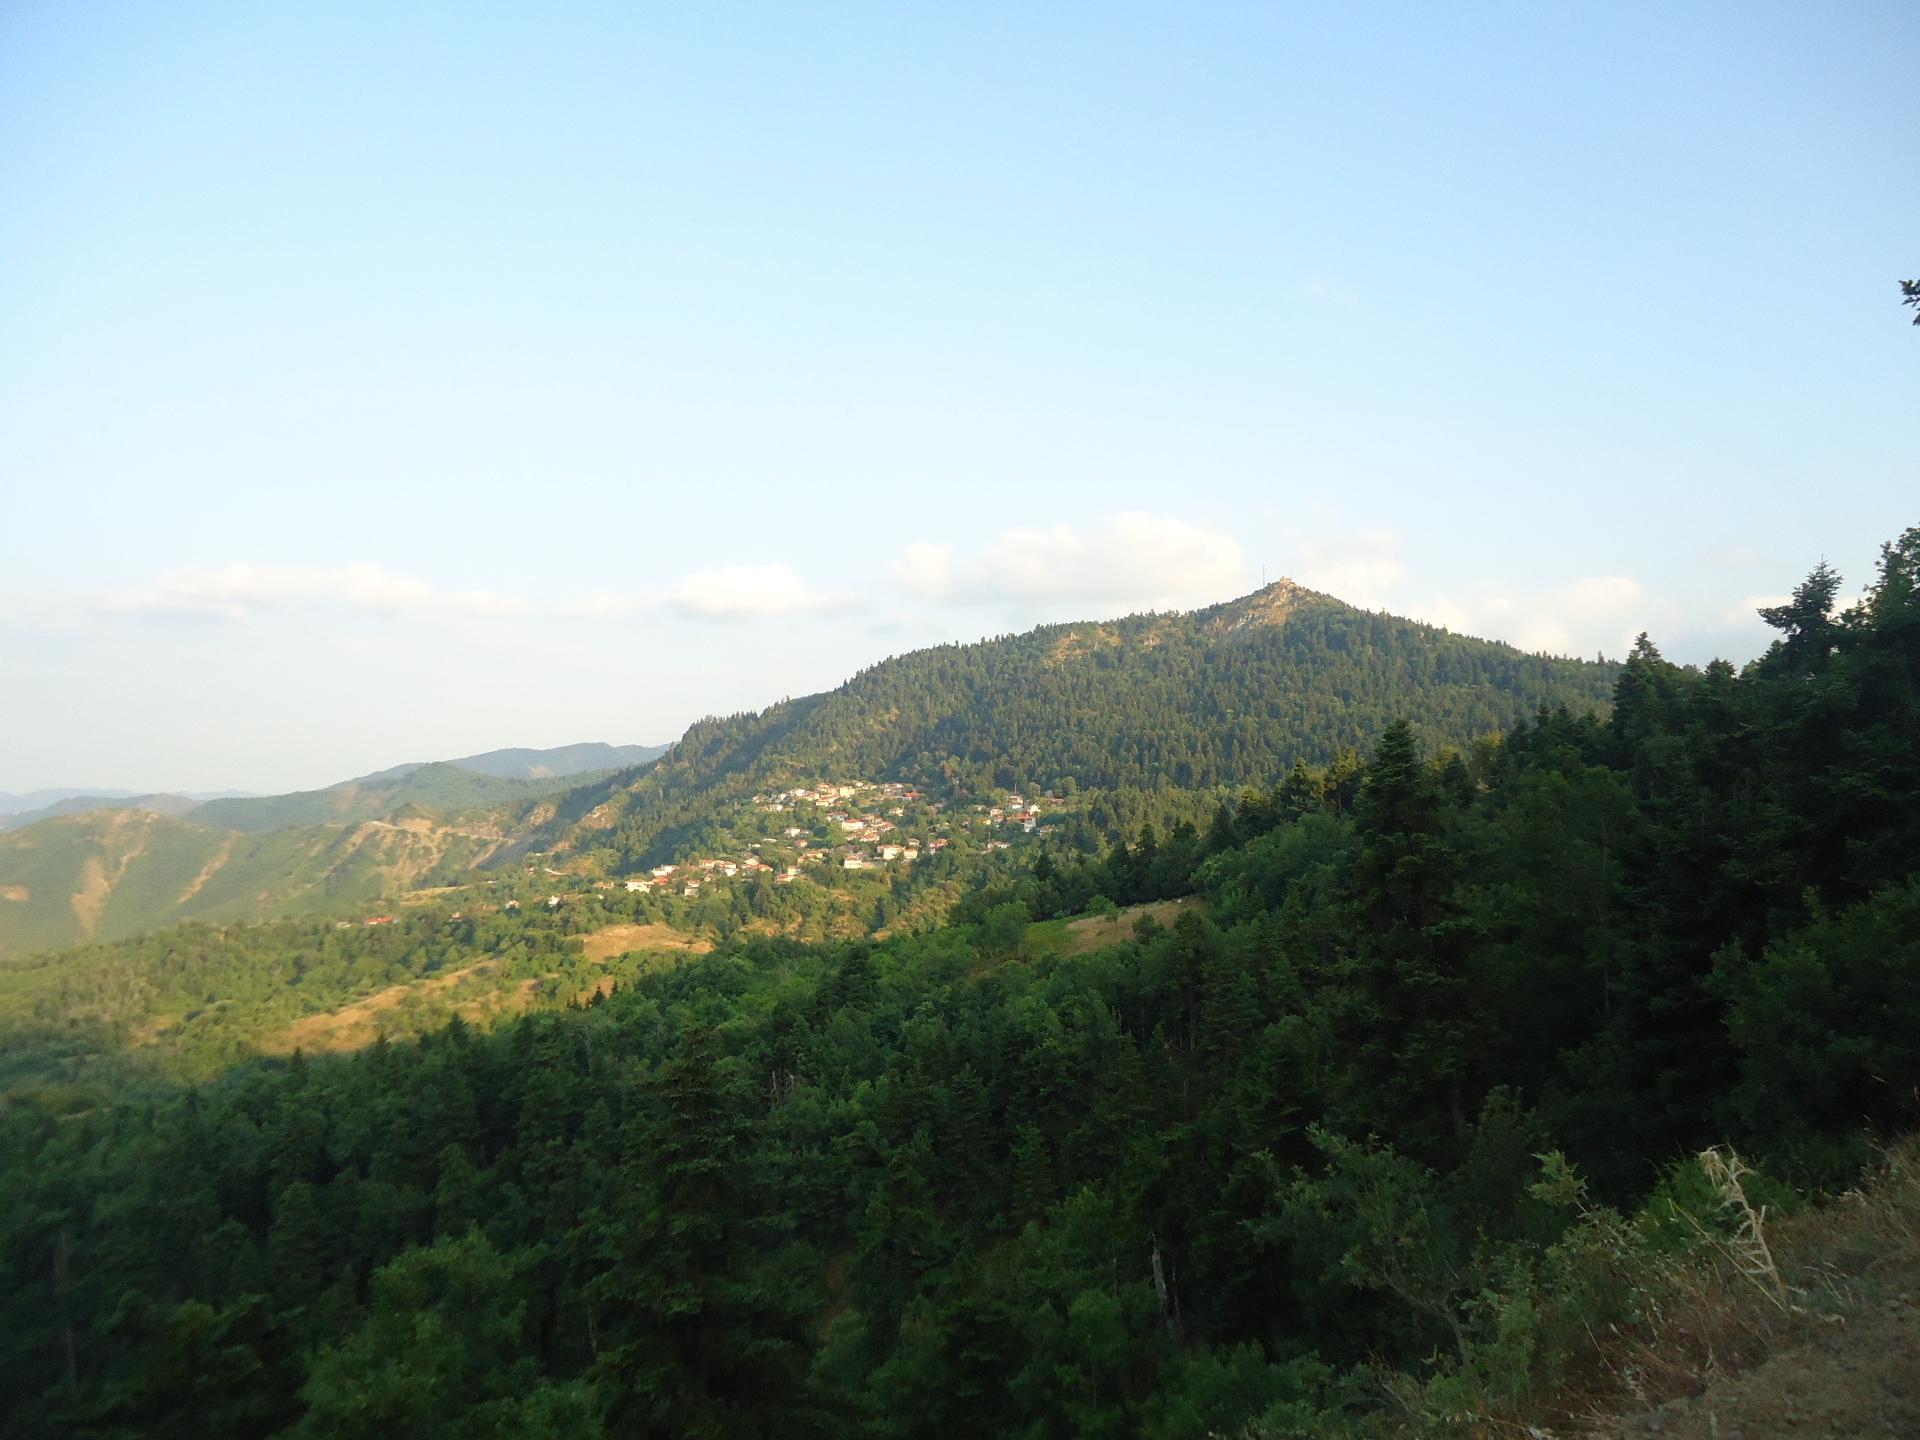 Τα Βουνά των Αγράφων στην Καστανιά - Καρδίτσας